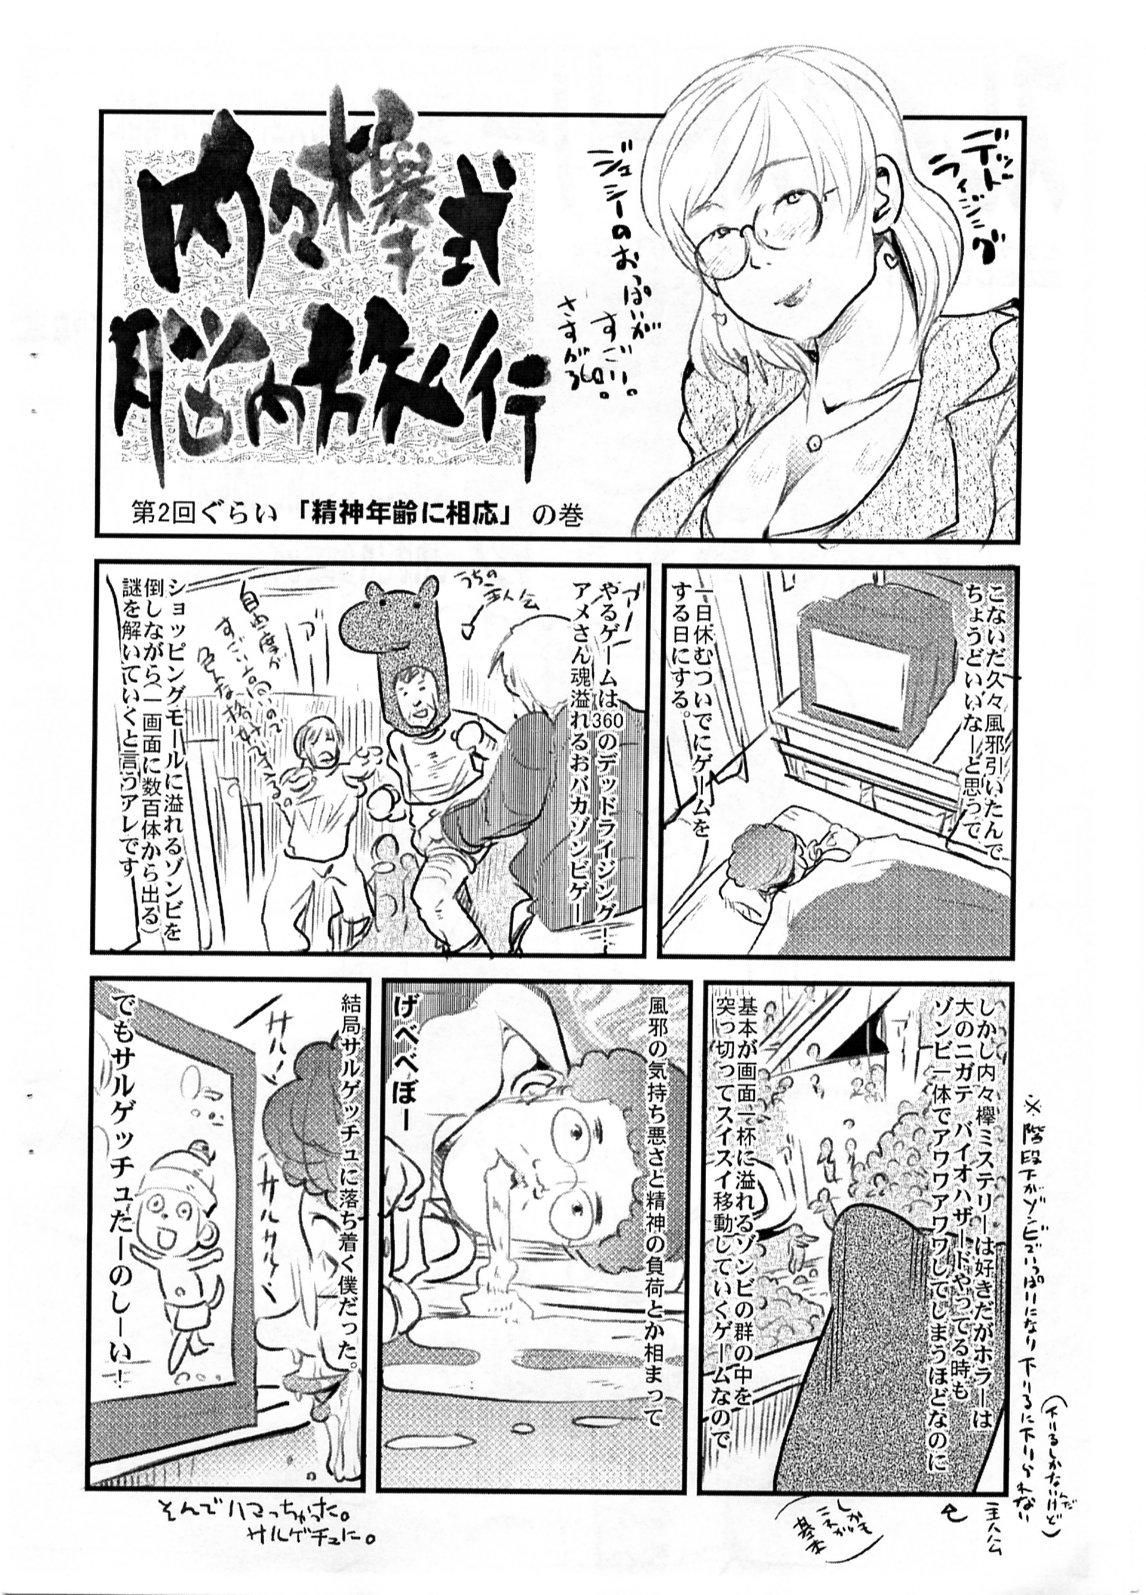 Arabic Yaseiji ni iroiro oshieru hon nano da - Digimon savers Bwc - Page 11